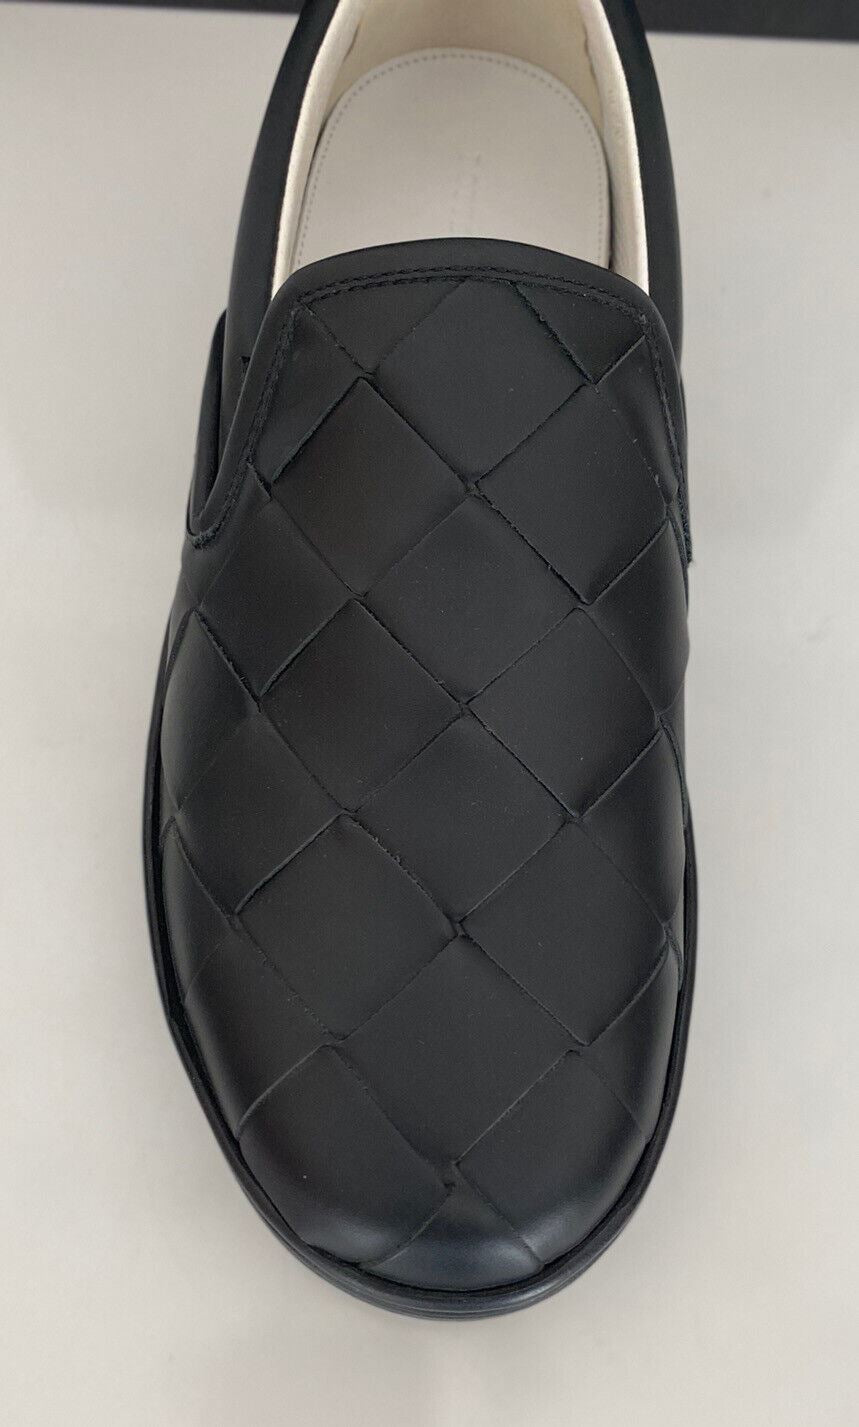 Черные туфли из телячьей кожи Bottega Veneta Intreciato, стоимость 760 долларов США, 10, США, 578303, Италия 